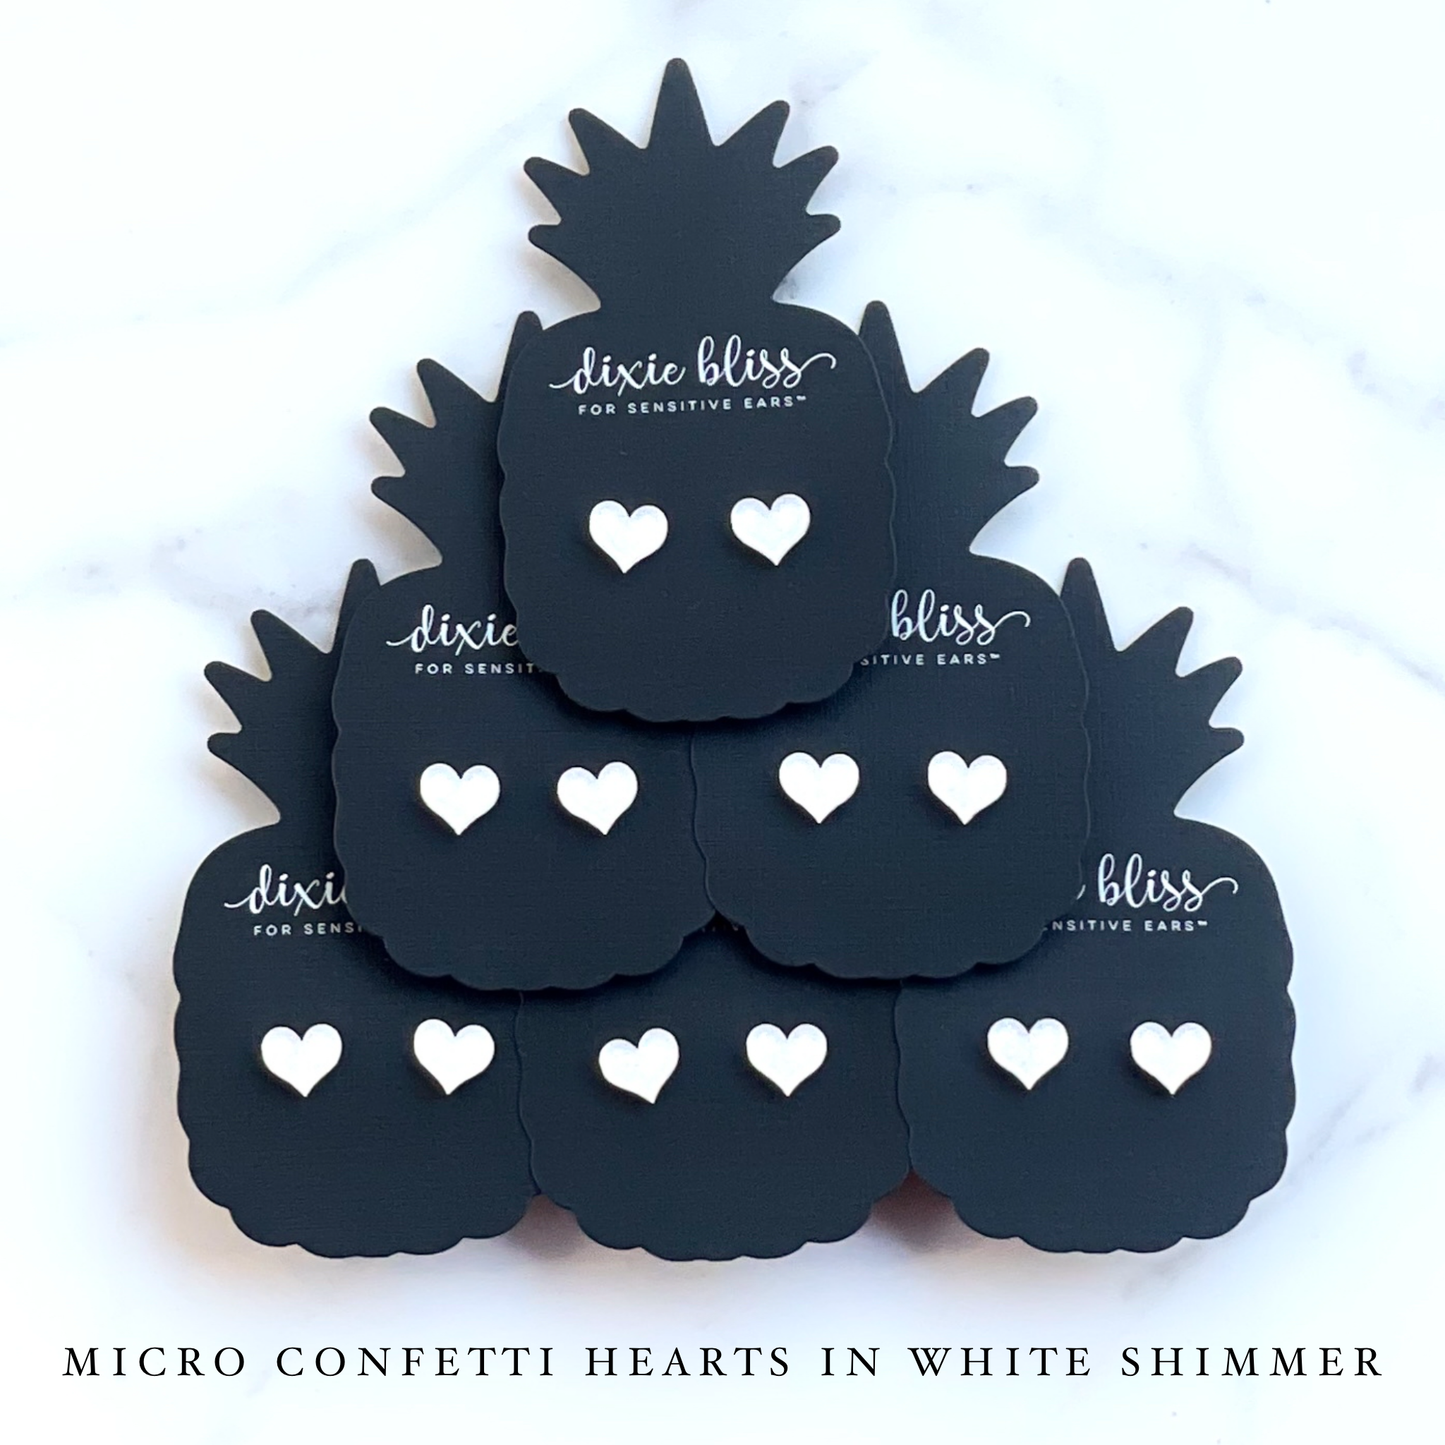 Micro Confetti Hearts in White Shimmer